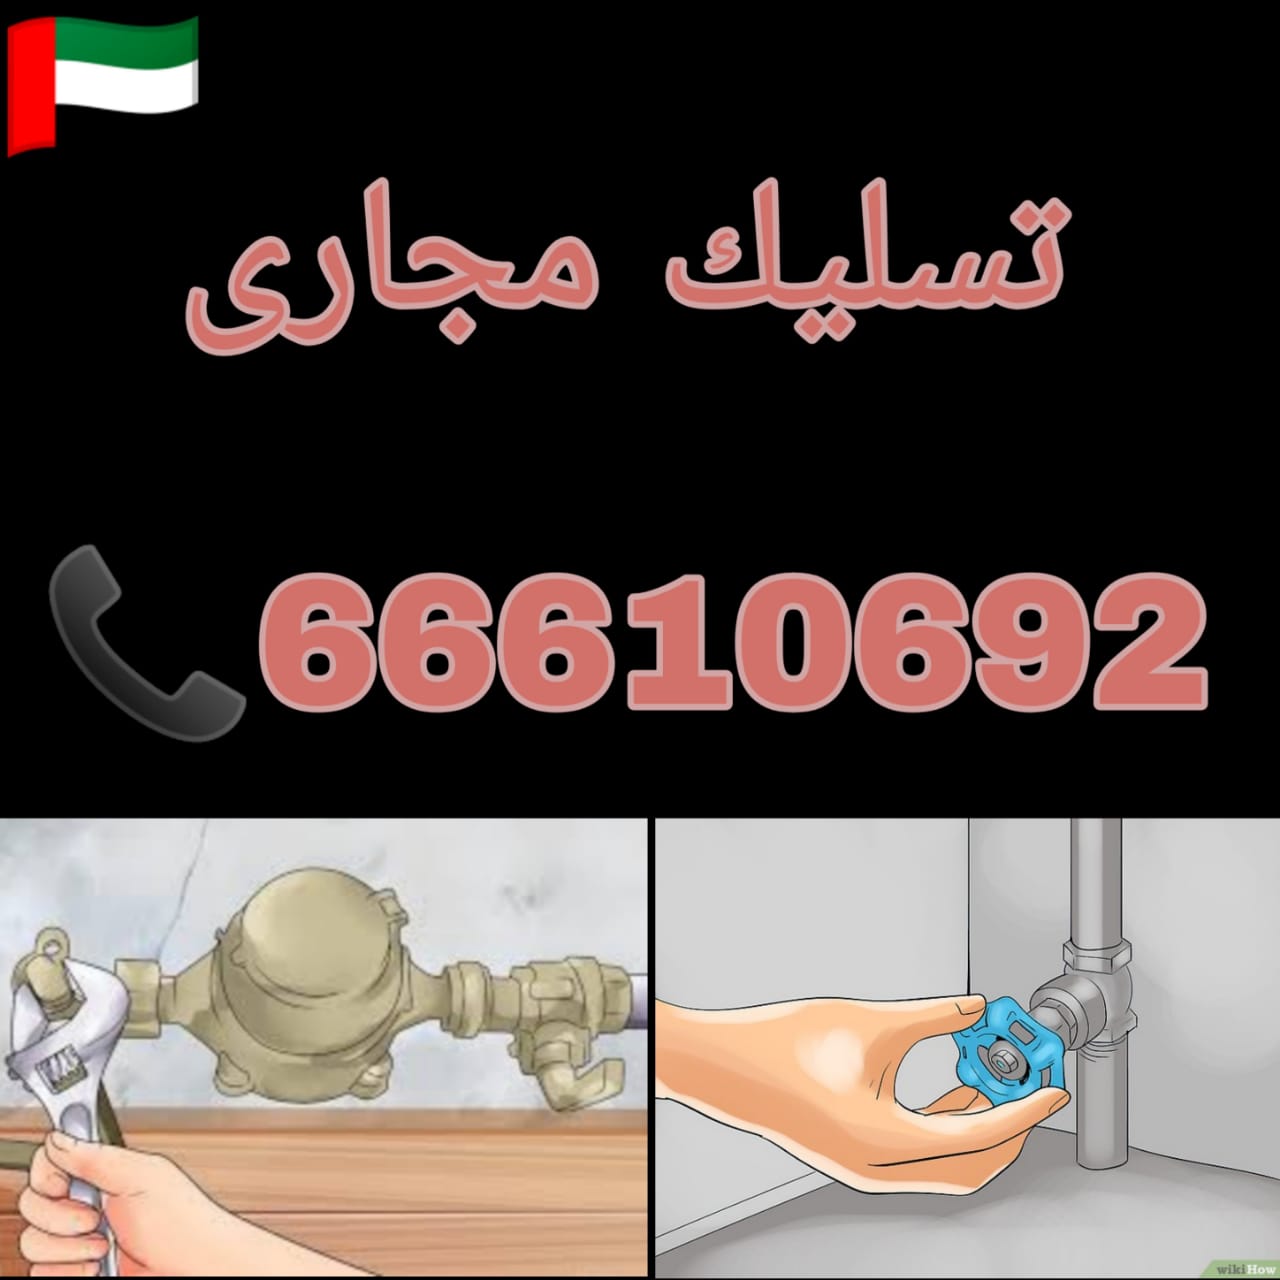 تسليك مجاري صباح الناصر / 66610692 / صيانة وتركيب فني صحي الكويت